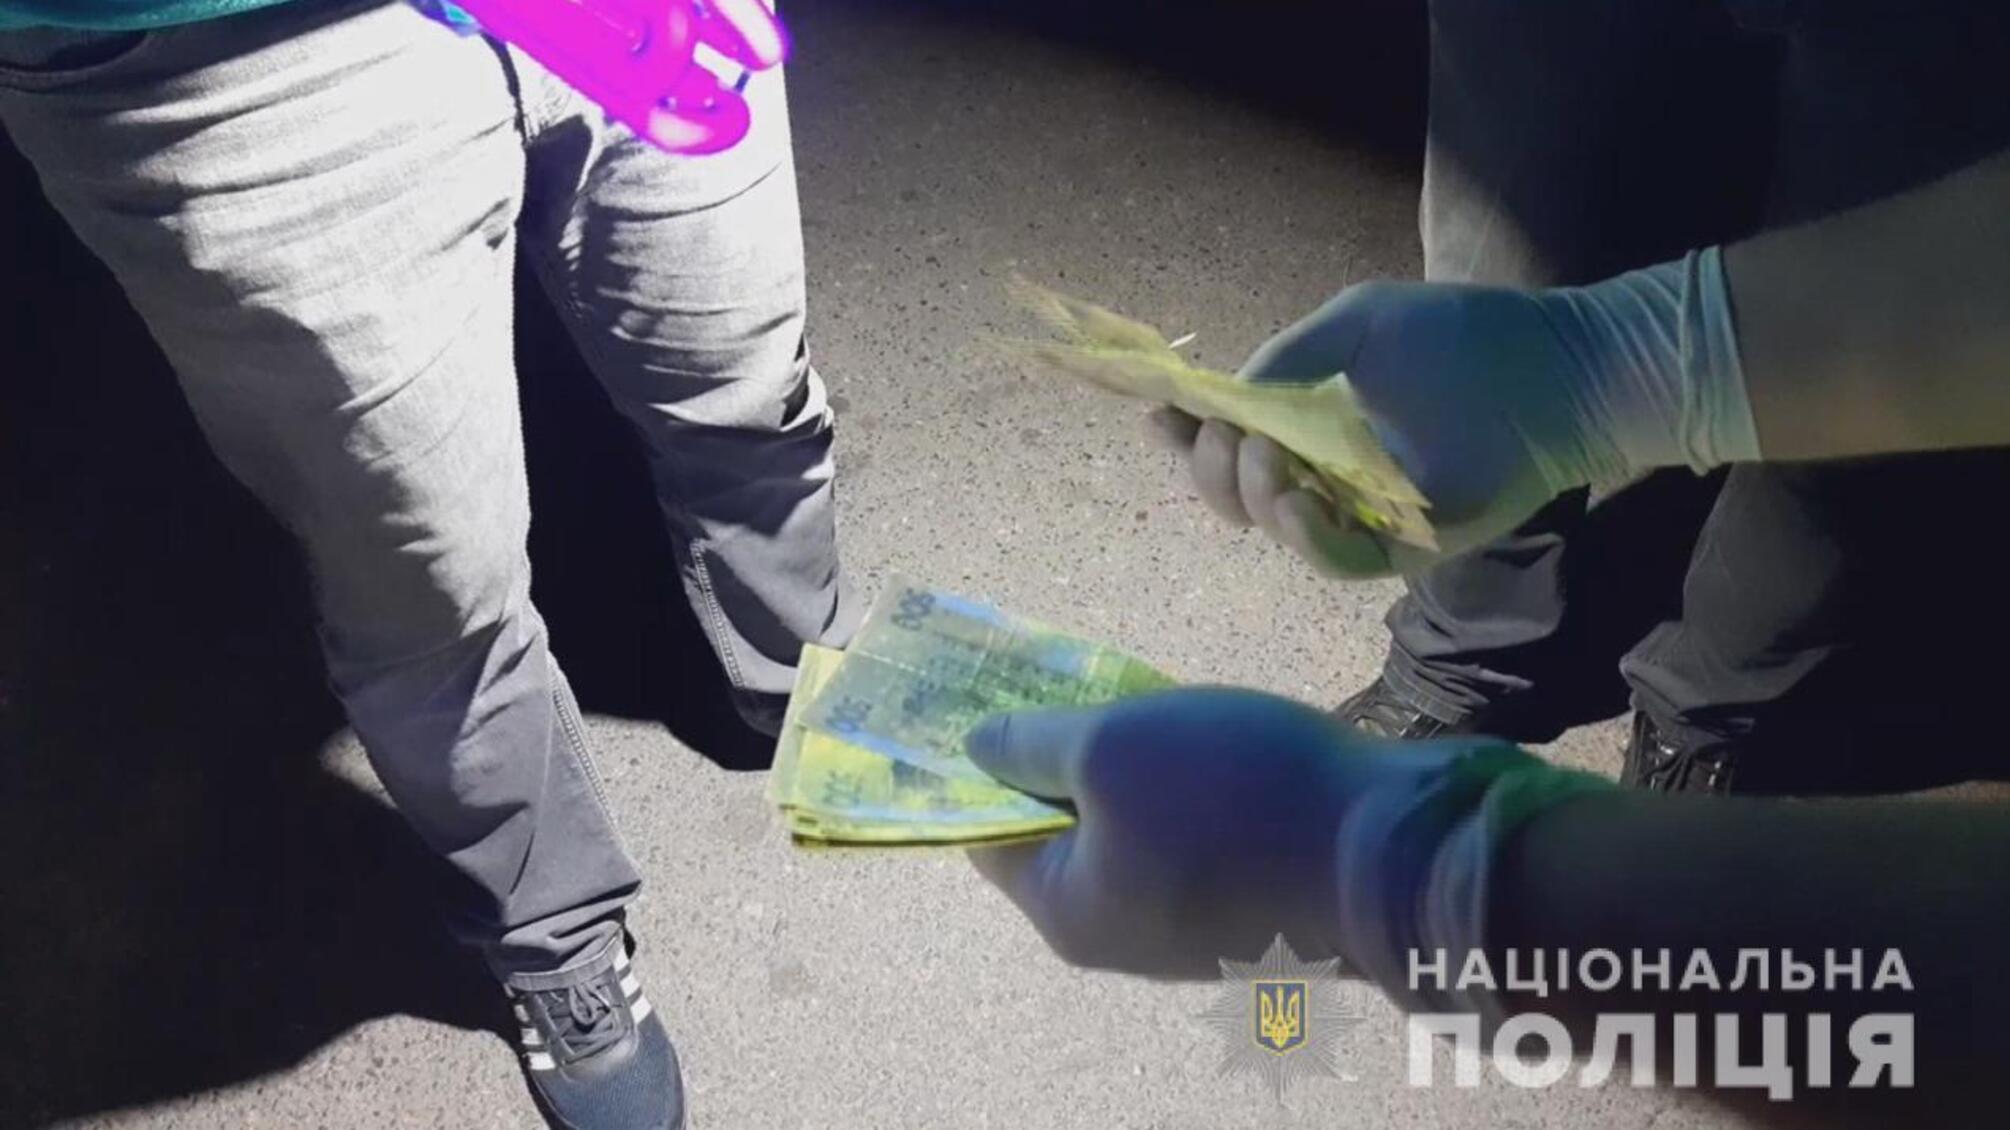 Правоохоронці затримали жителя Одещини за підозрою у виготовленні та збуті підроблених грошей